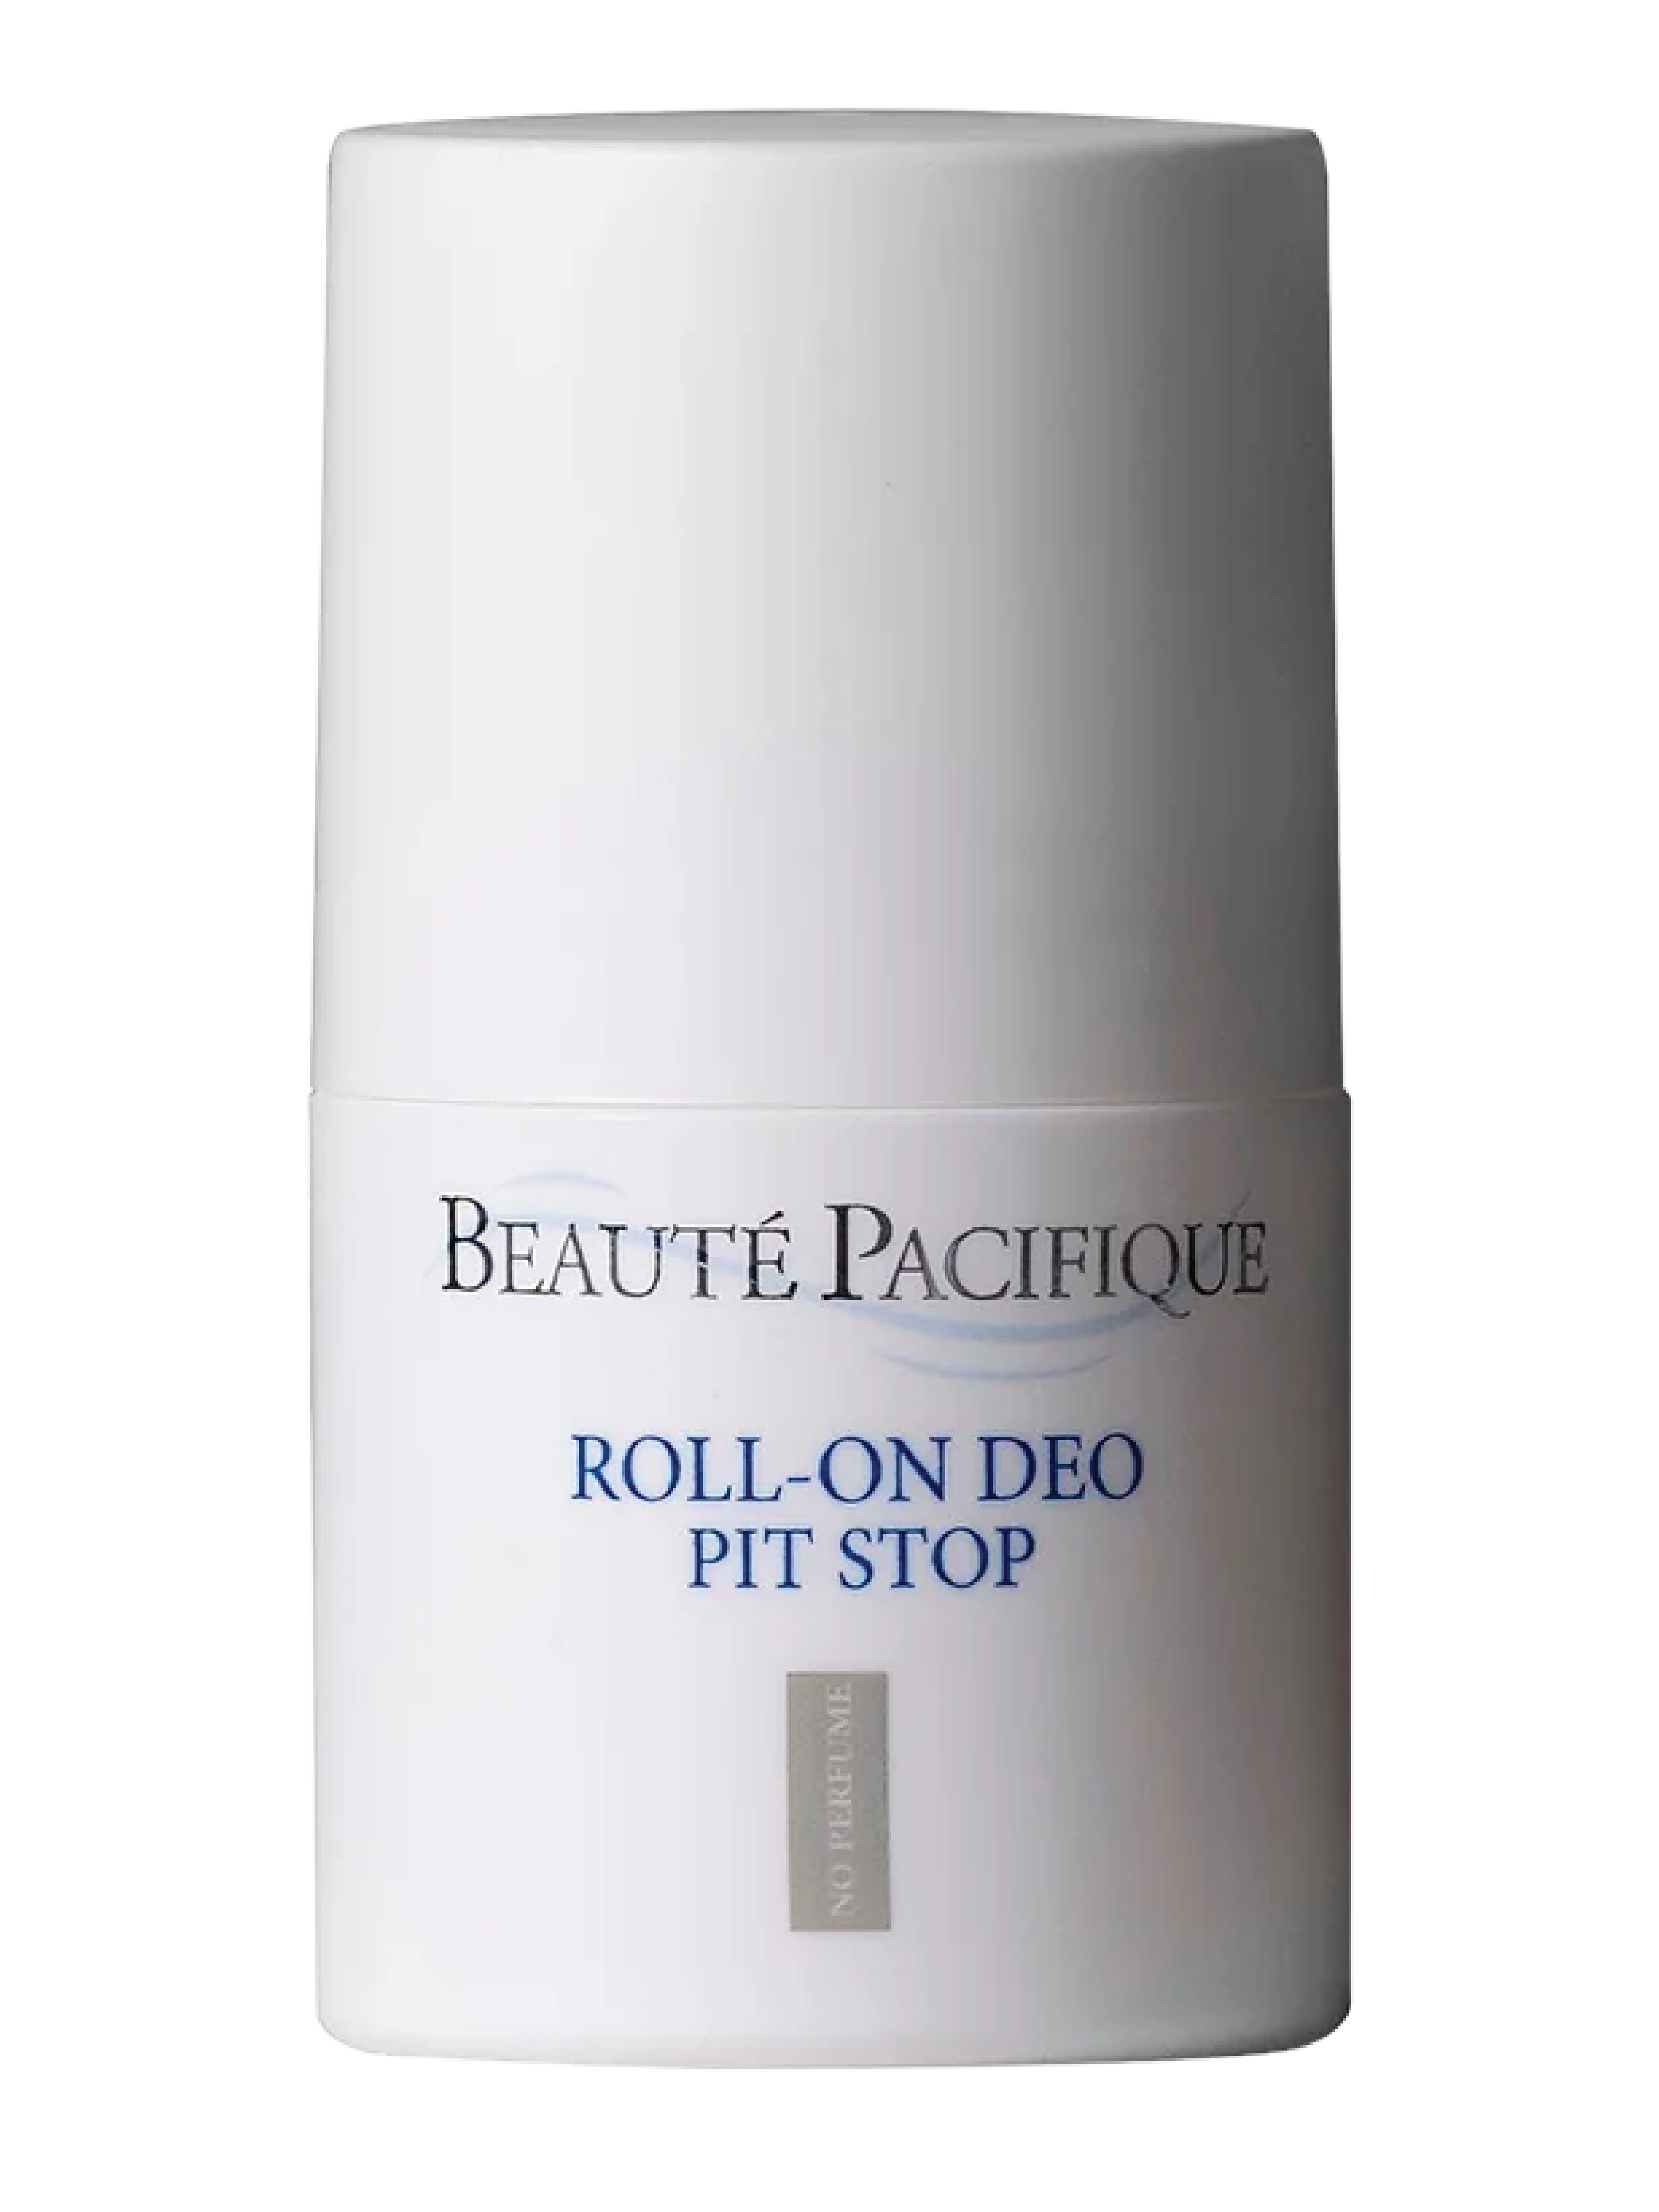 Beauté Pacifique Pit Stop Deodorant, 50 ml